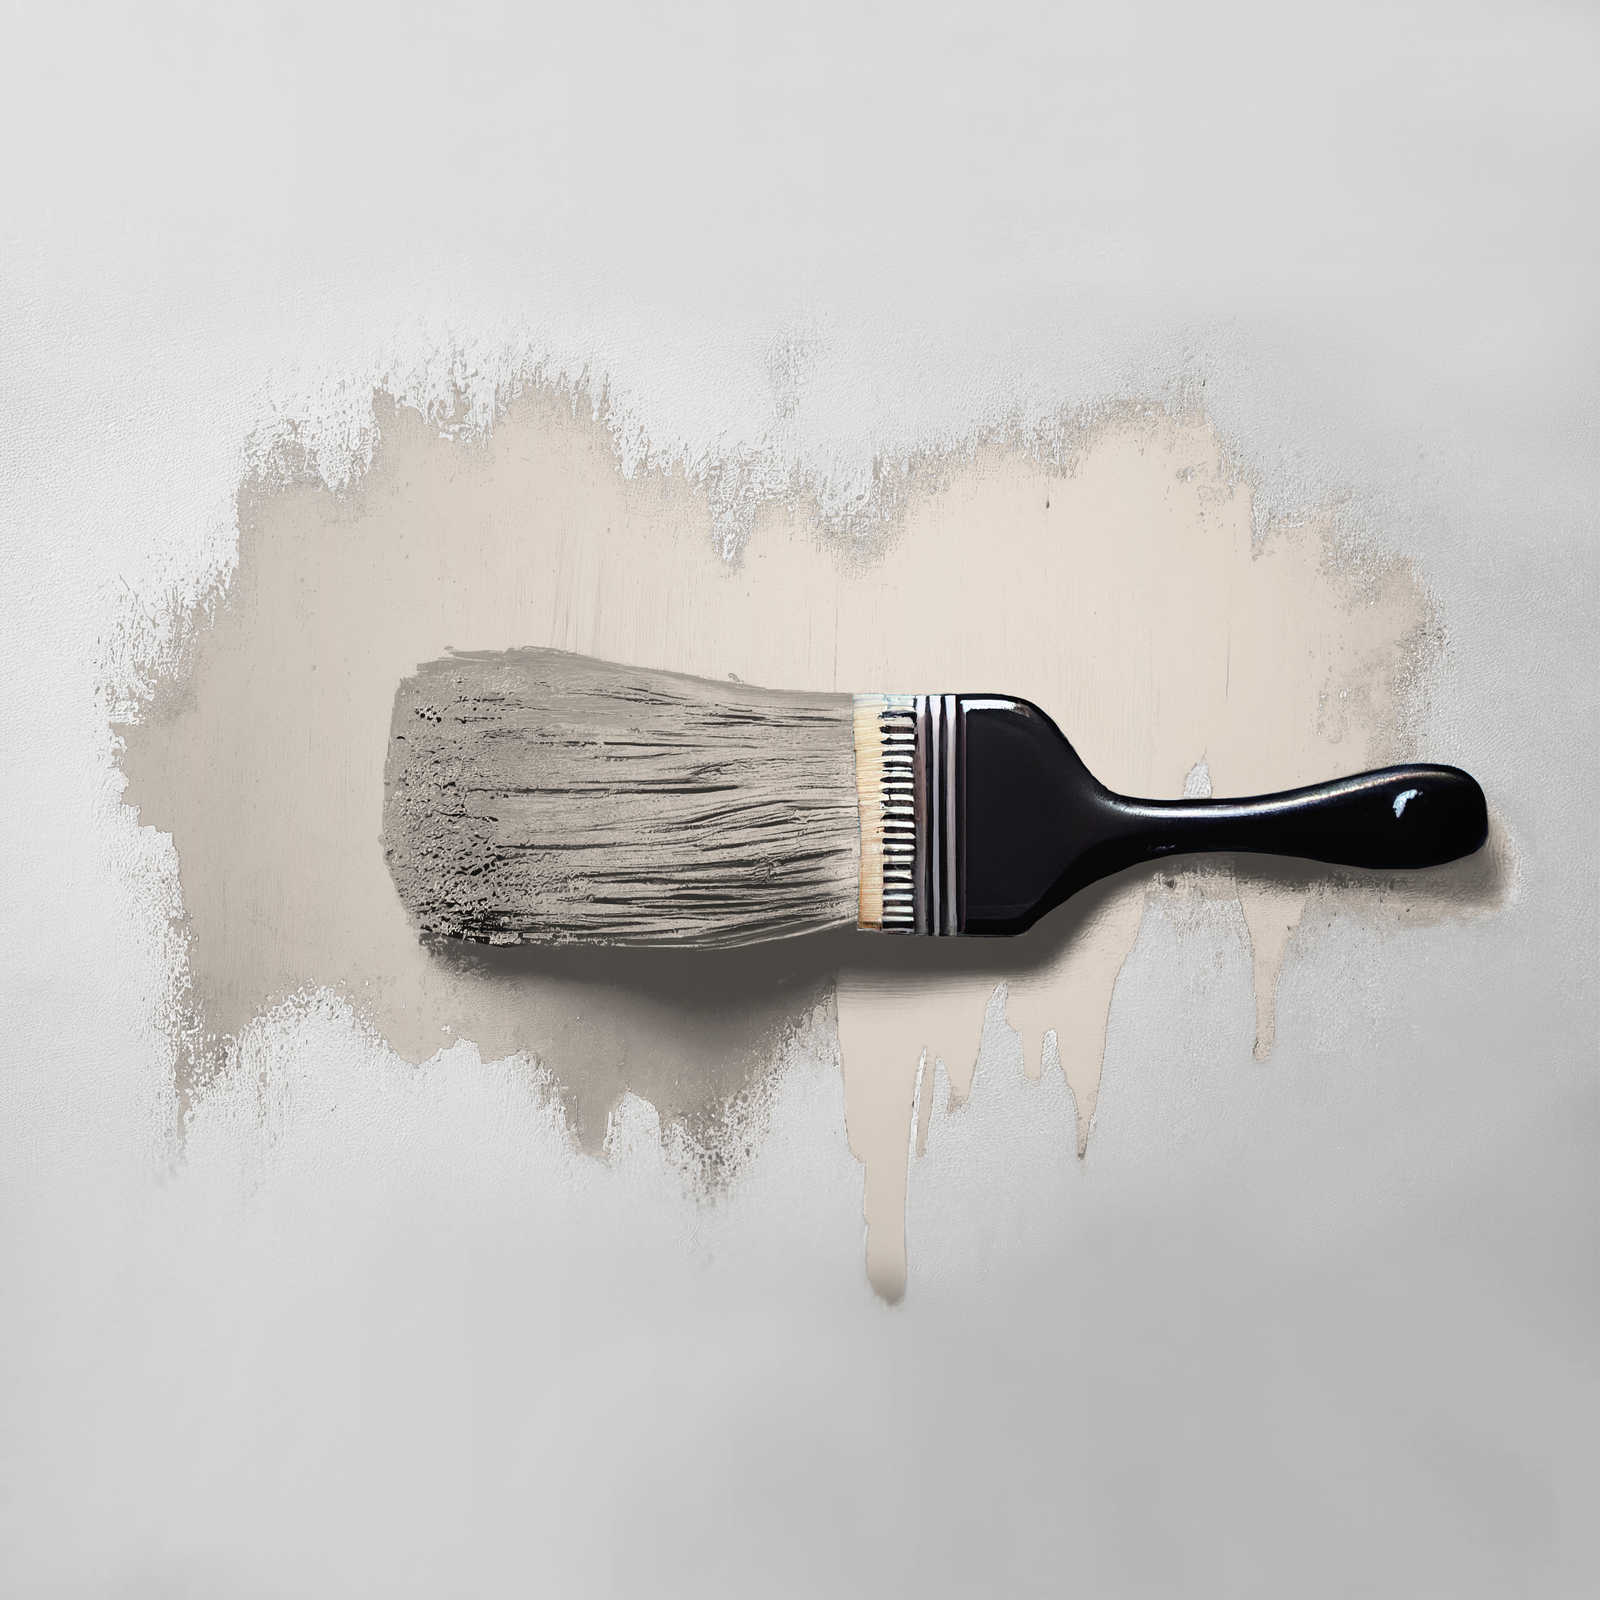             Pittura murale TCK6018 »Pure Potato« in beige chiaro casalingo – 2,5 litri
        